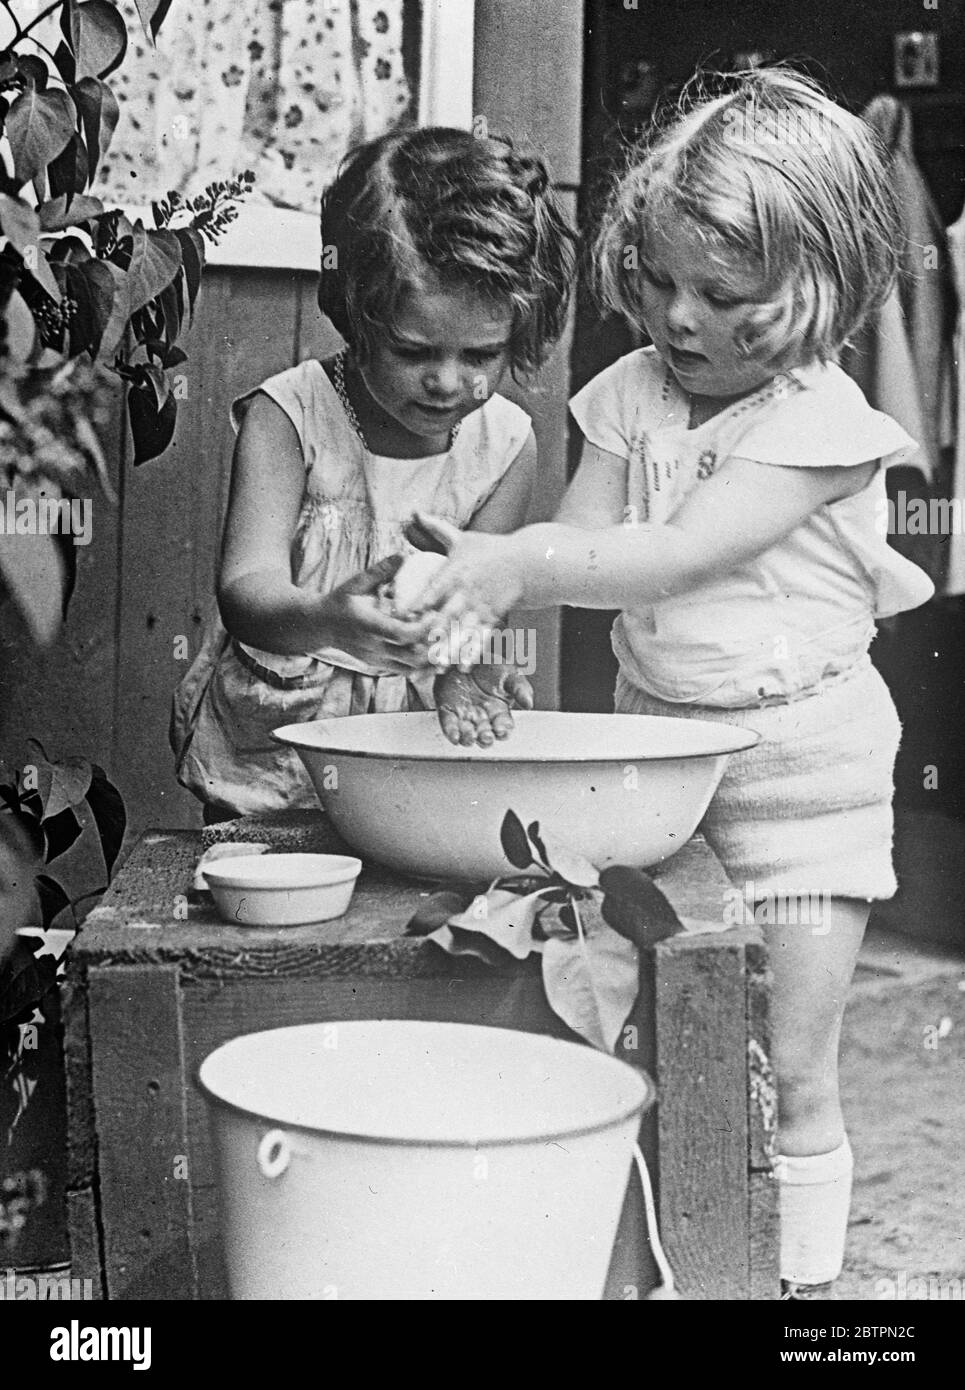 Jabón y agua. La distribución equitativa de agua y jabón era motivo de preocupación para estas dos niñas de bebés con cabeza de choque mientras se preparaban para la cena en su casa de Berlín. Foto de stock